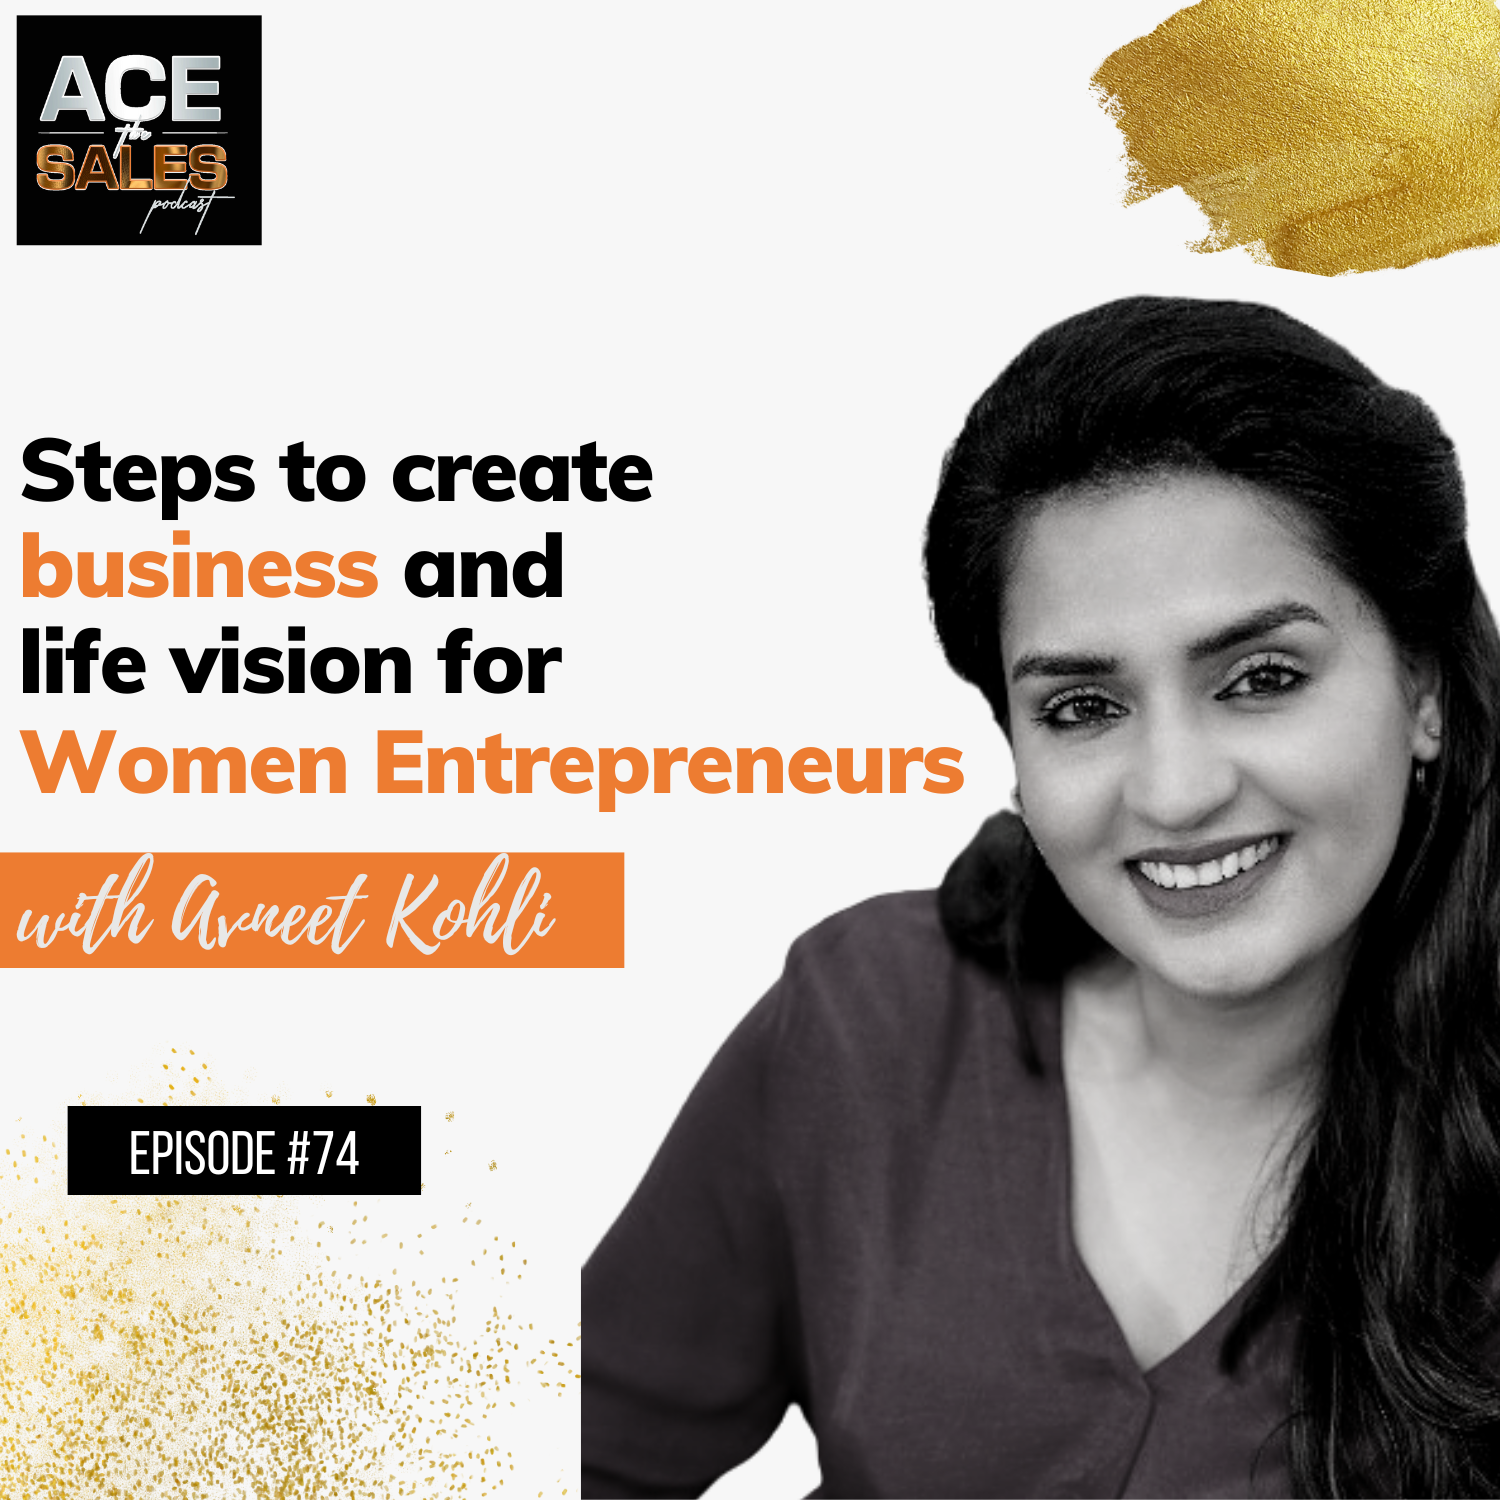 Steps to create business and life vision for women entrepreneurs -Avneet Kohli